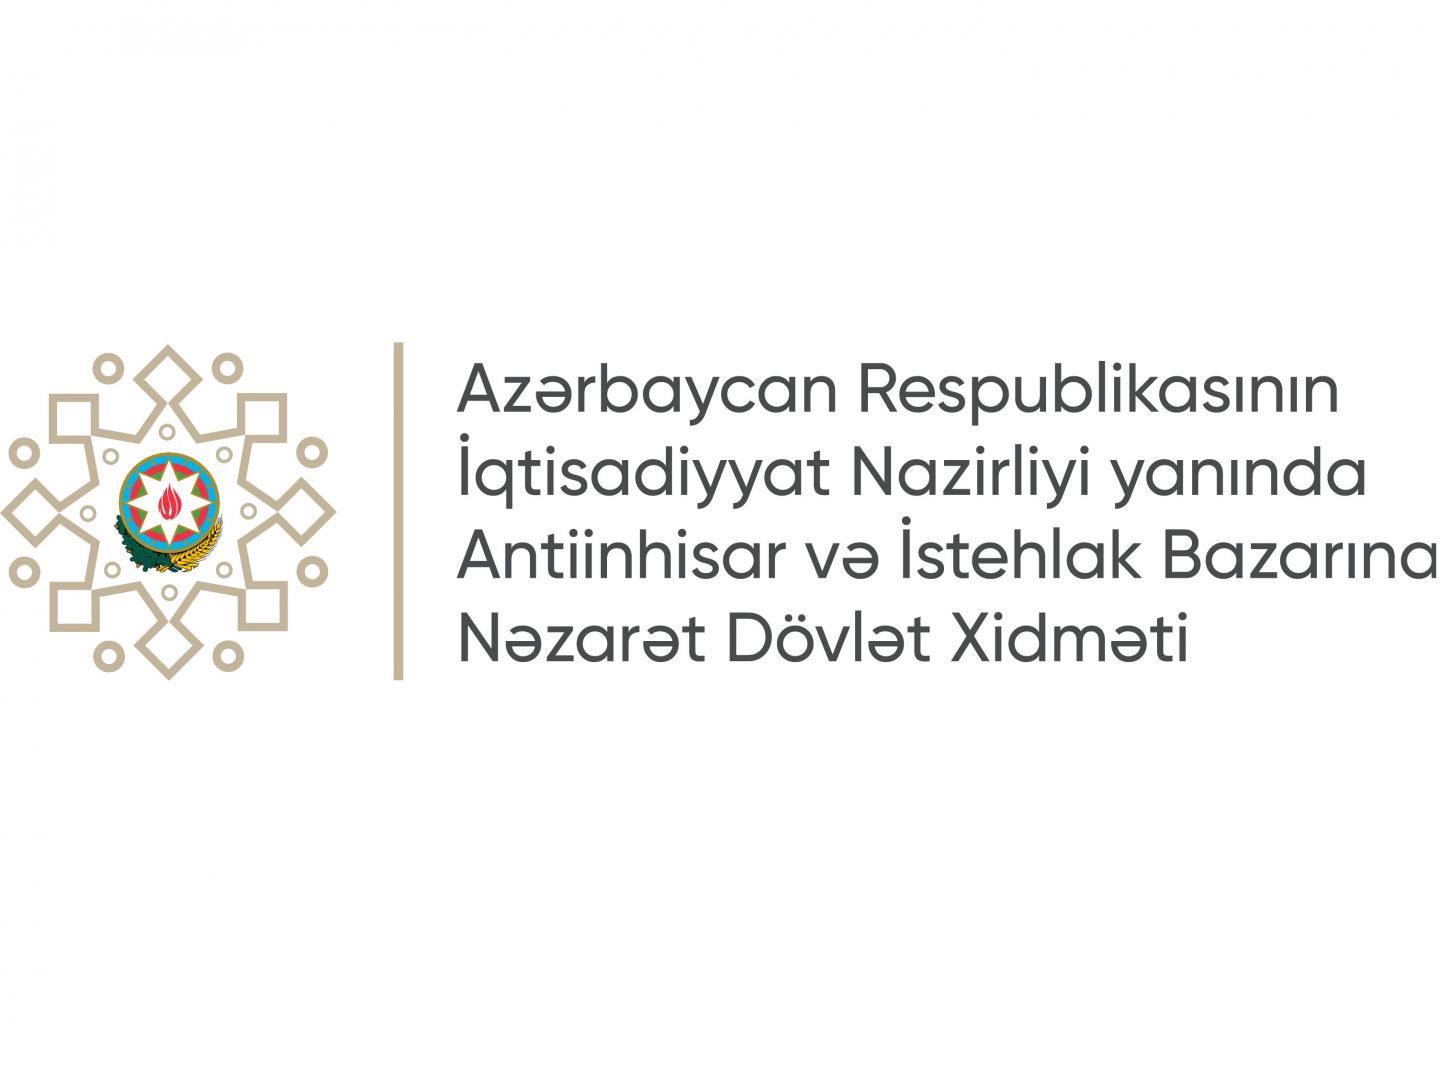 В Азербайджане предпринимаются шаги по расширению участия субъектов предпринимательства в госзакупках